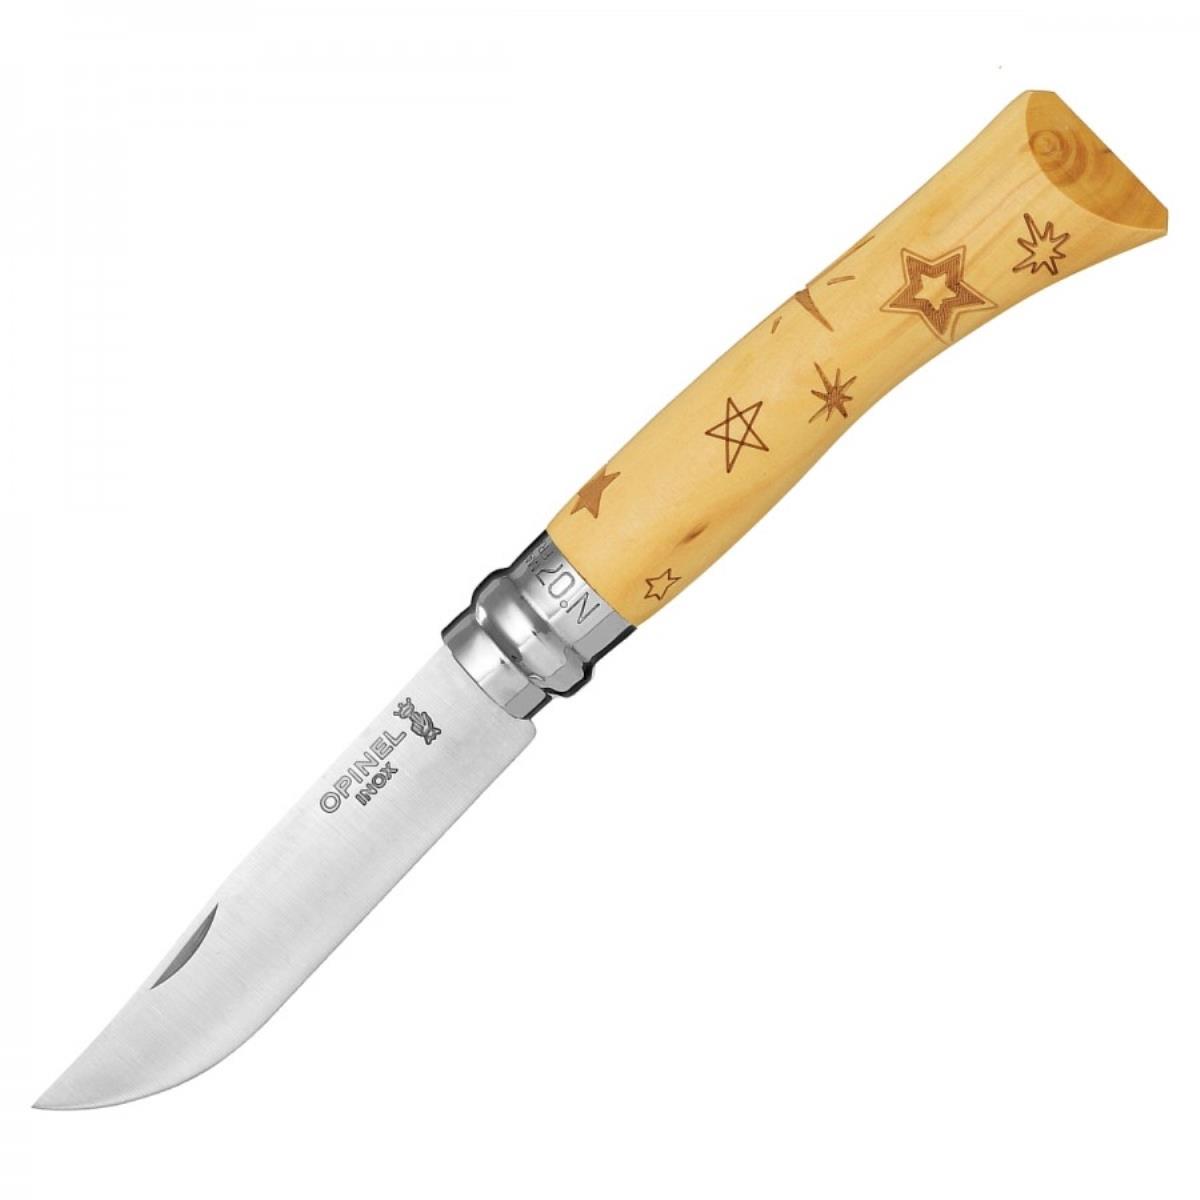 Нож №7 VRI Nature-Stars (звезды) нержавеющая сталь, рукоять самшит, длина клинка 8см OPINEL музыкальный инструмент калимба звезды